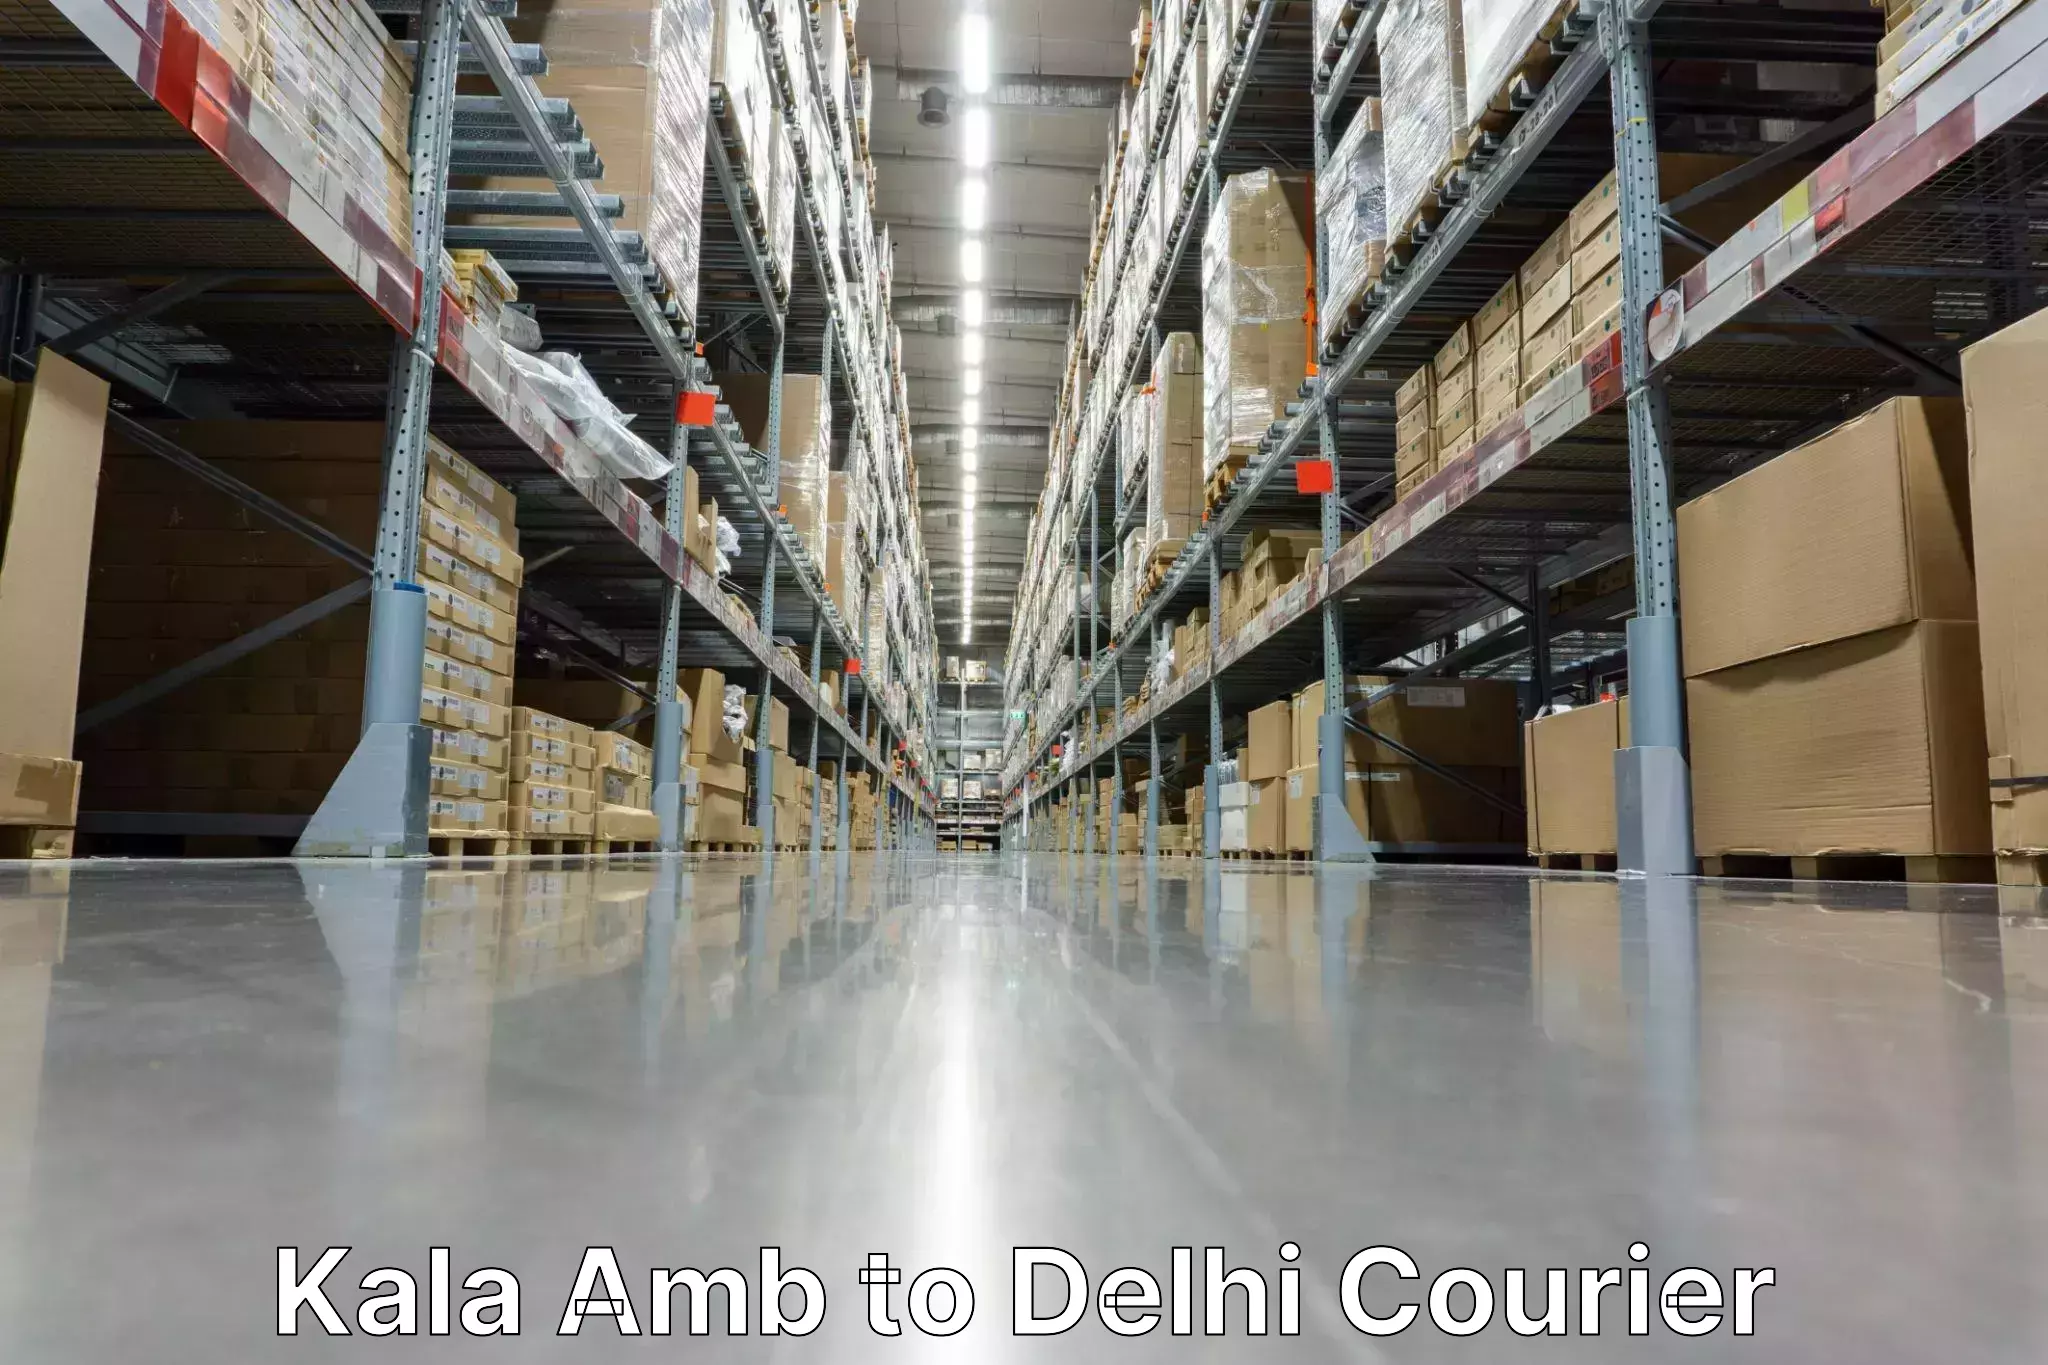 International parcel service Kala Amb to Delhi